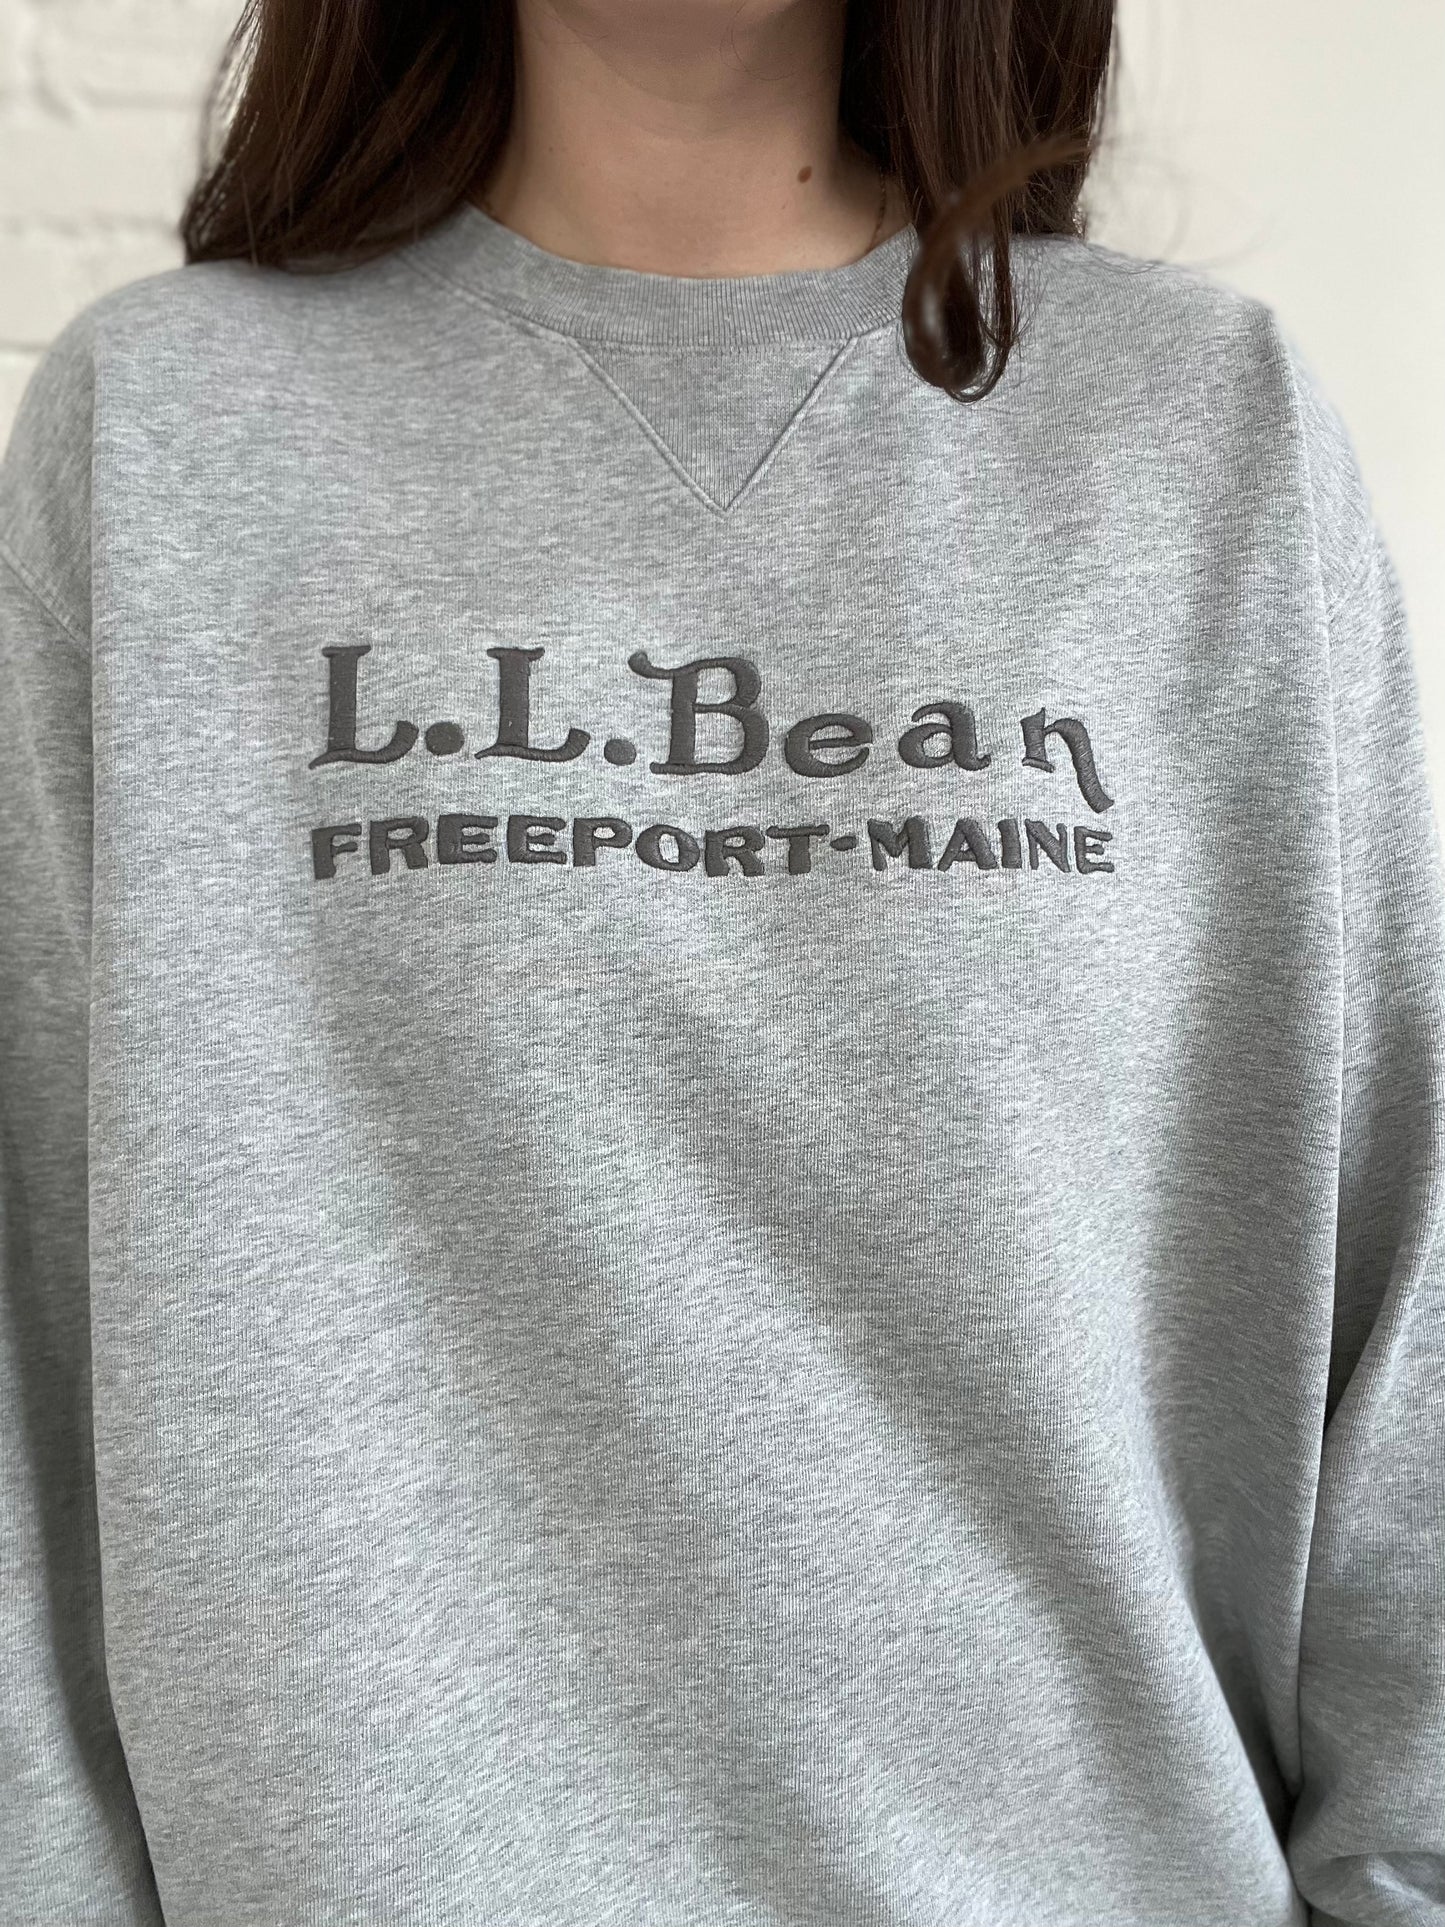 L.L. Bean Embroidered Crewneck - XL